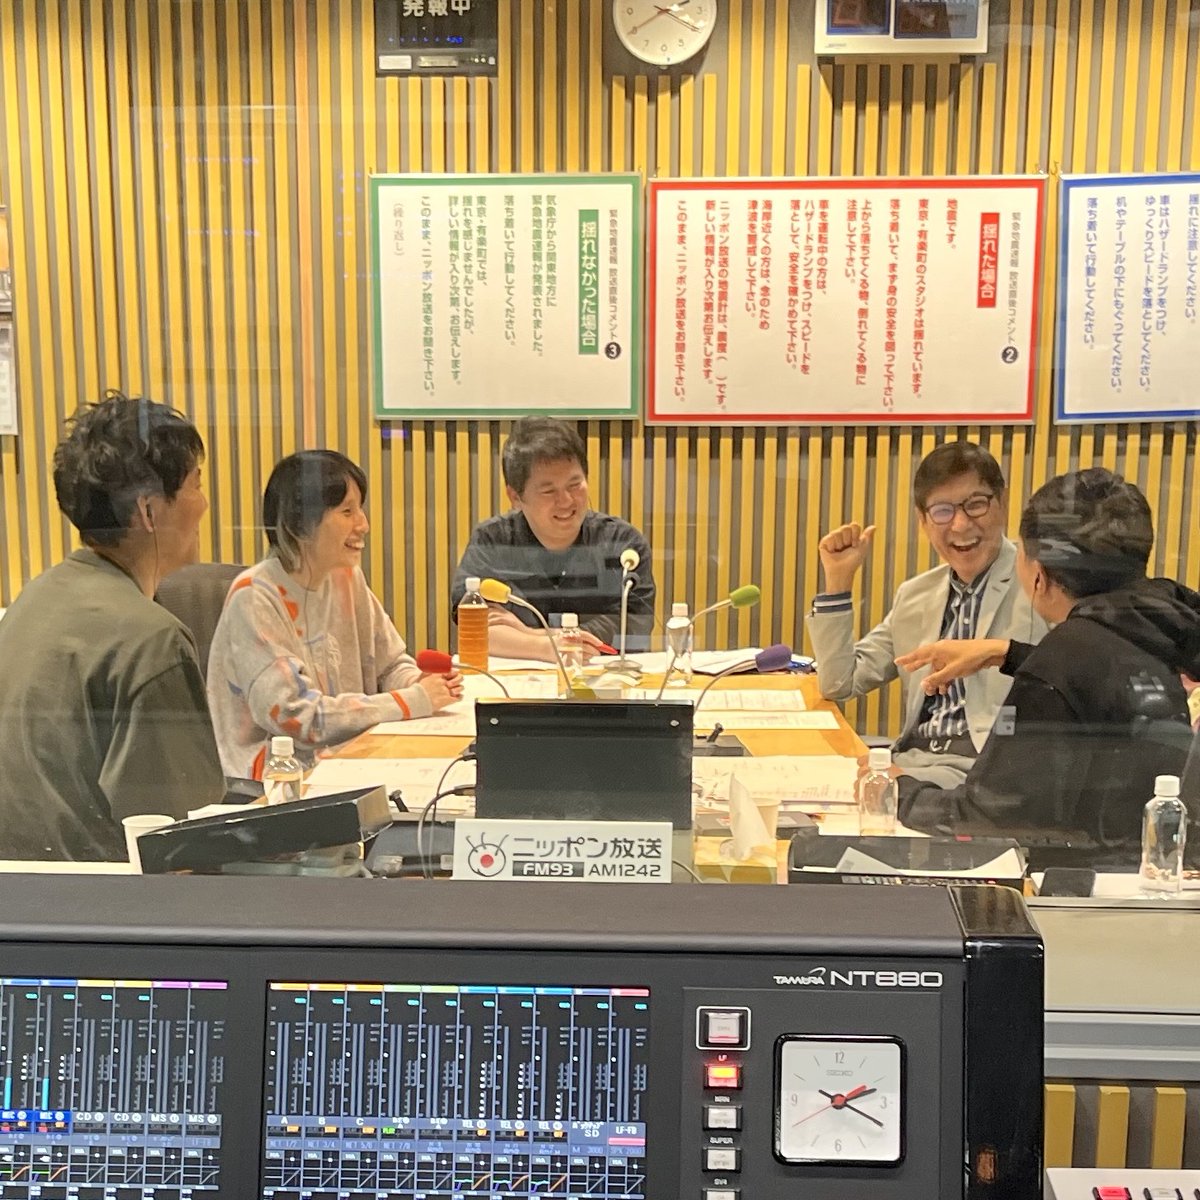 #ナイツラジオショー #関根勤 さん生出演中‼️ #飯尾和樹 さんのモノボケを大絶賛👏 radikoはこちらから radiko.jp/share/?sid=LFR… PCの方はこちらからもリアルタイムで聴けます radiko.jp/#LFR